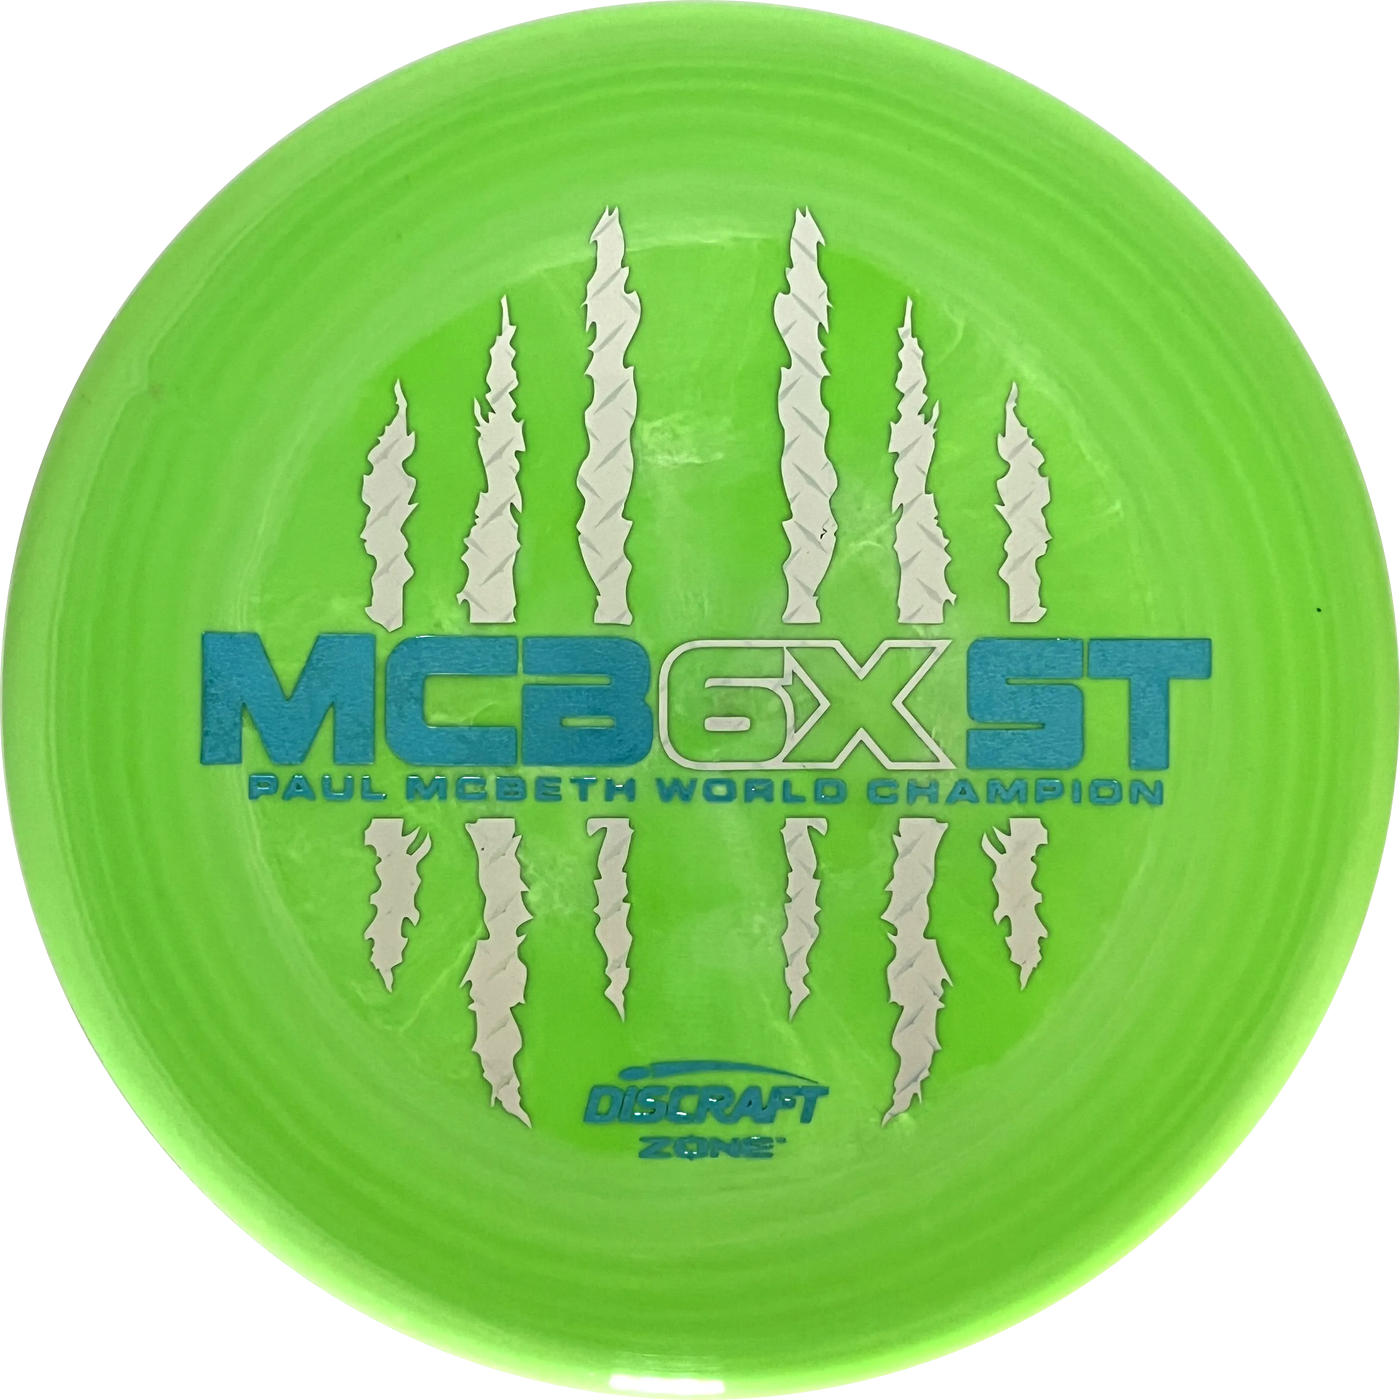 ESP Paul McBeth 6X Claw Zone